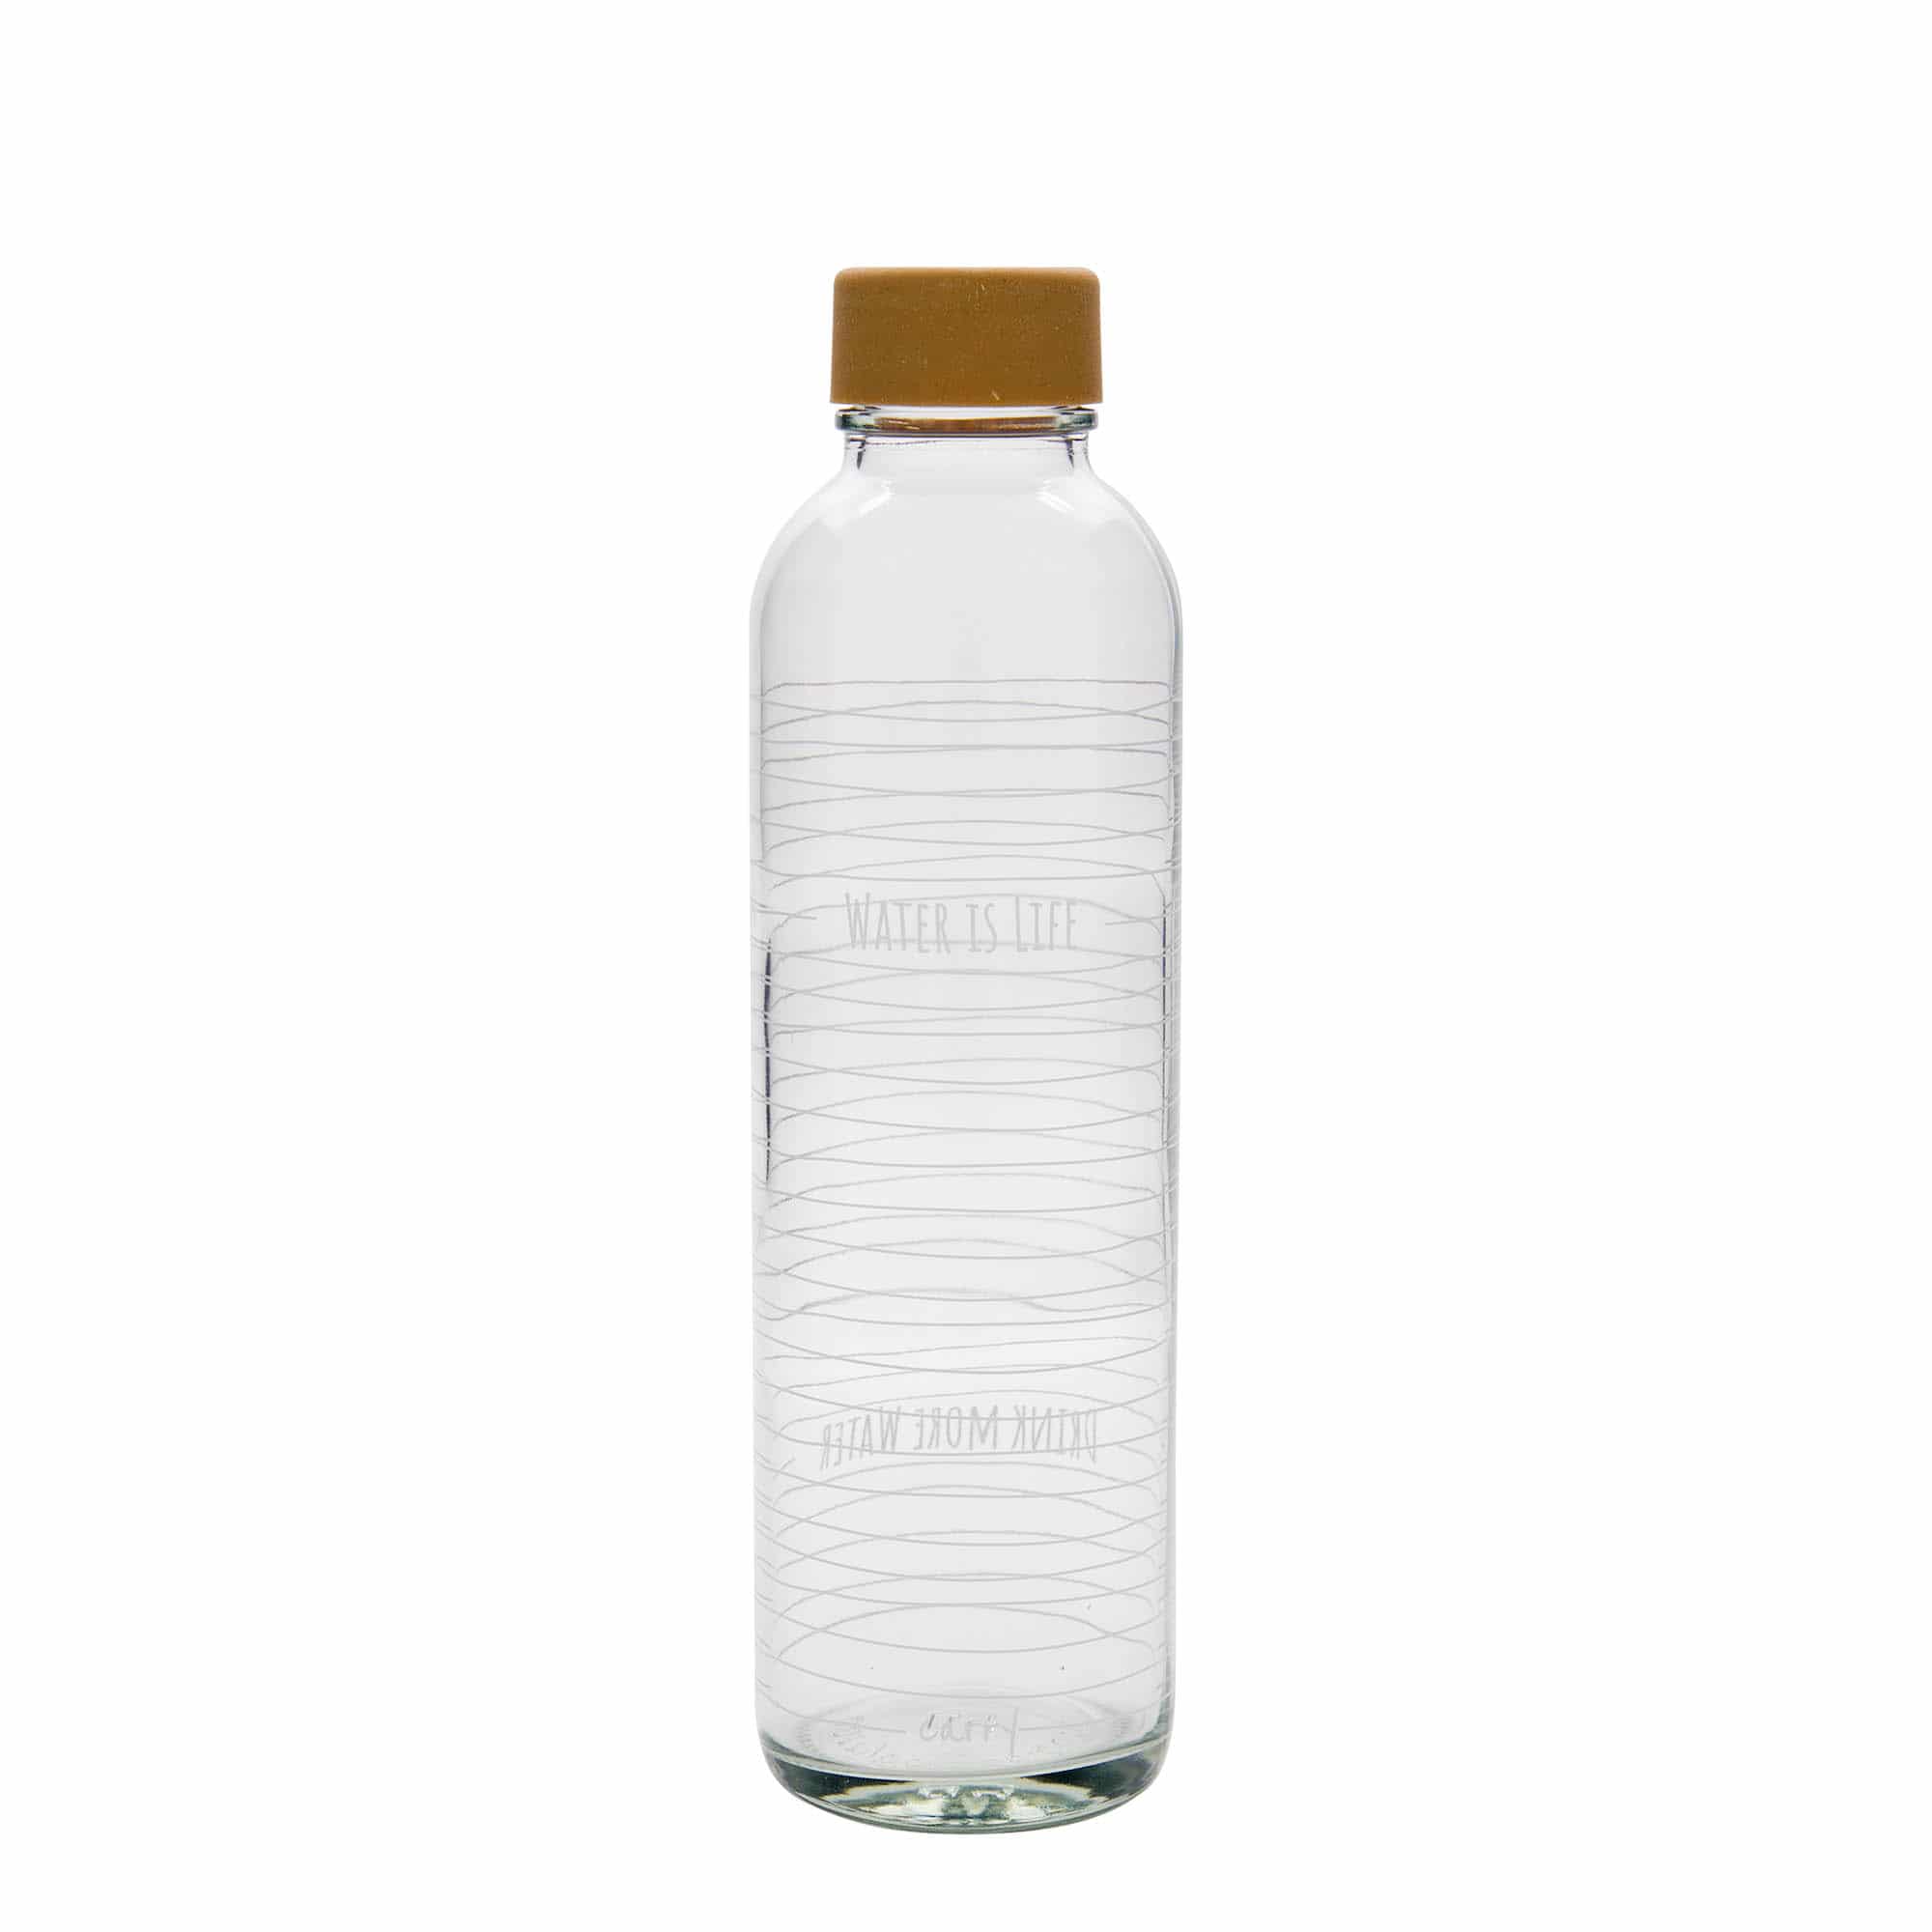 700 ml-es ivópalack CARRY Bottle, motívum: Water is Life, szájnyílás: csavaros kupak